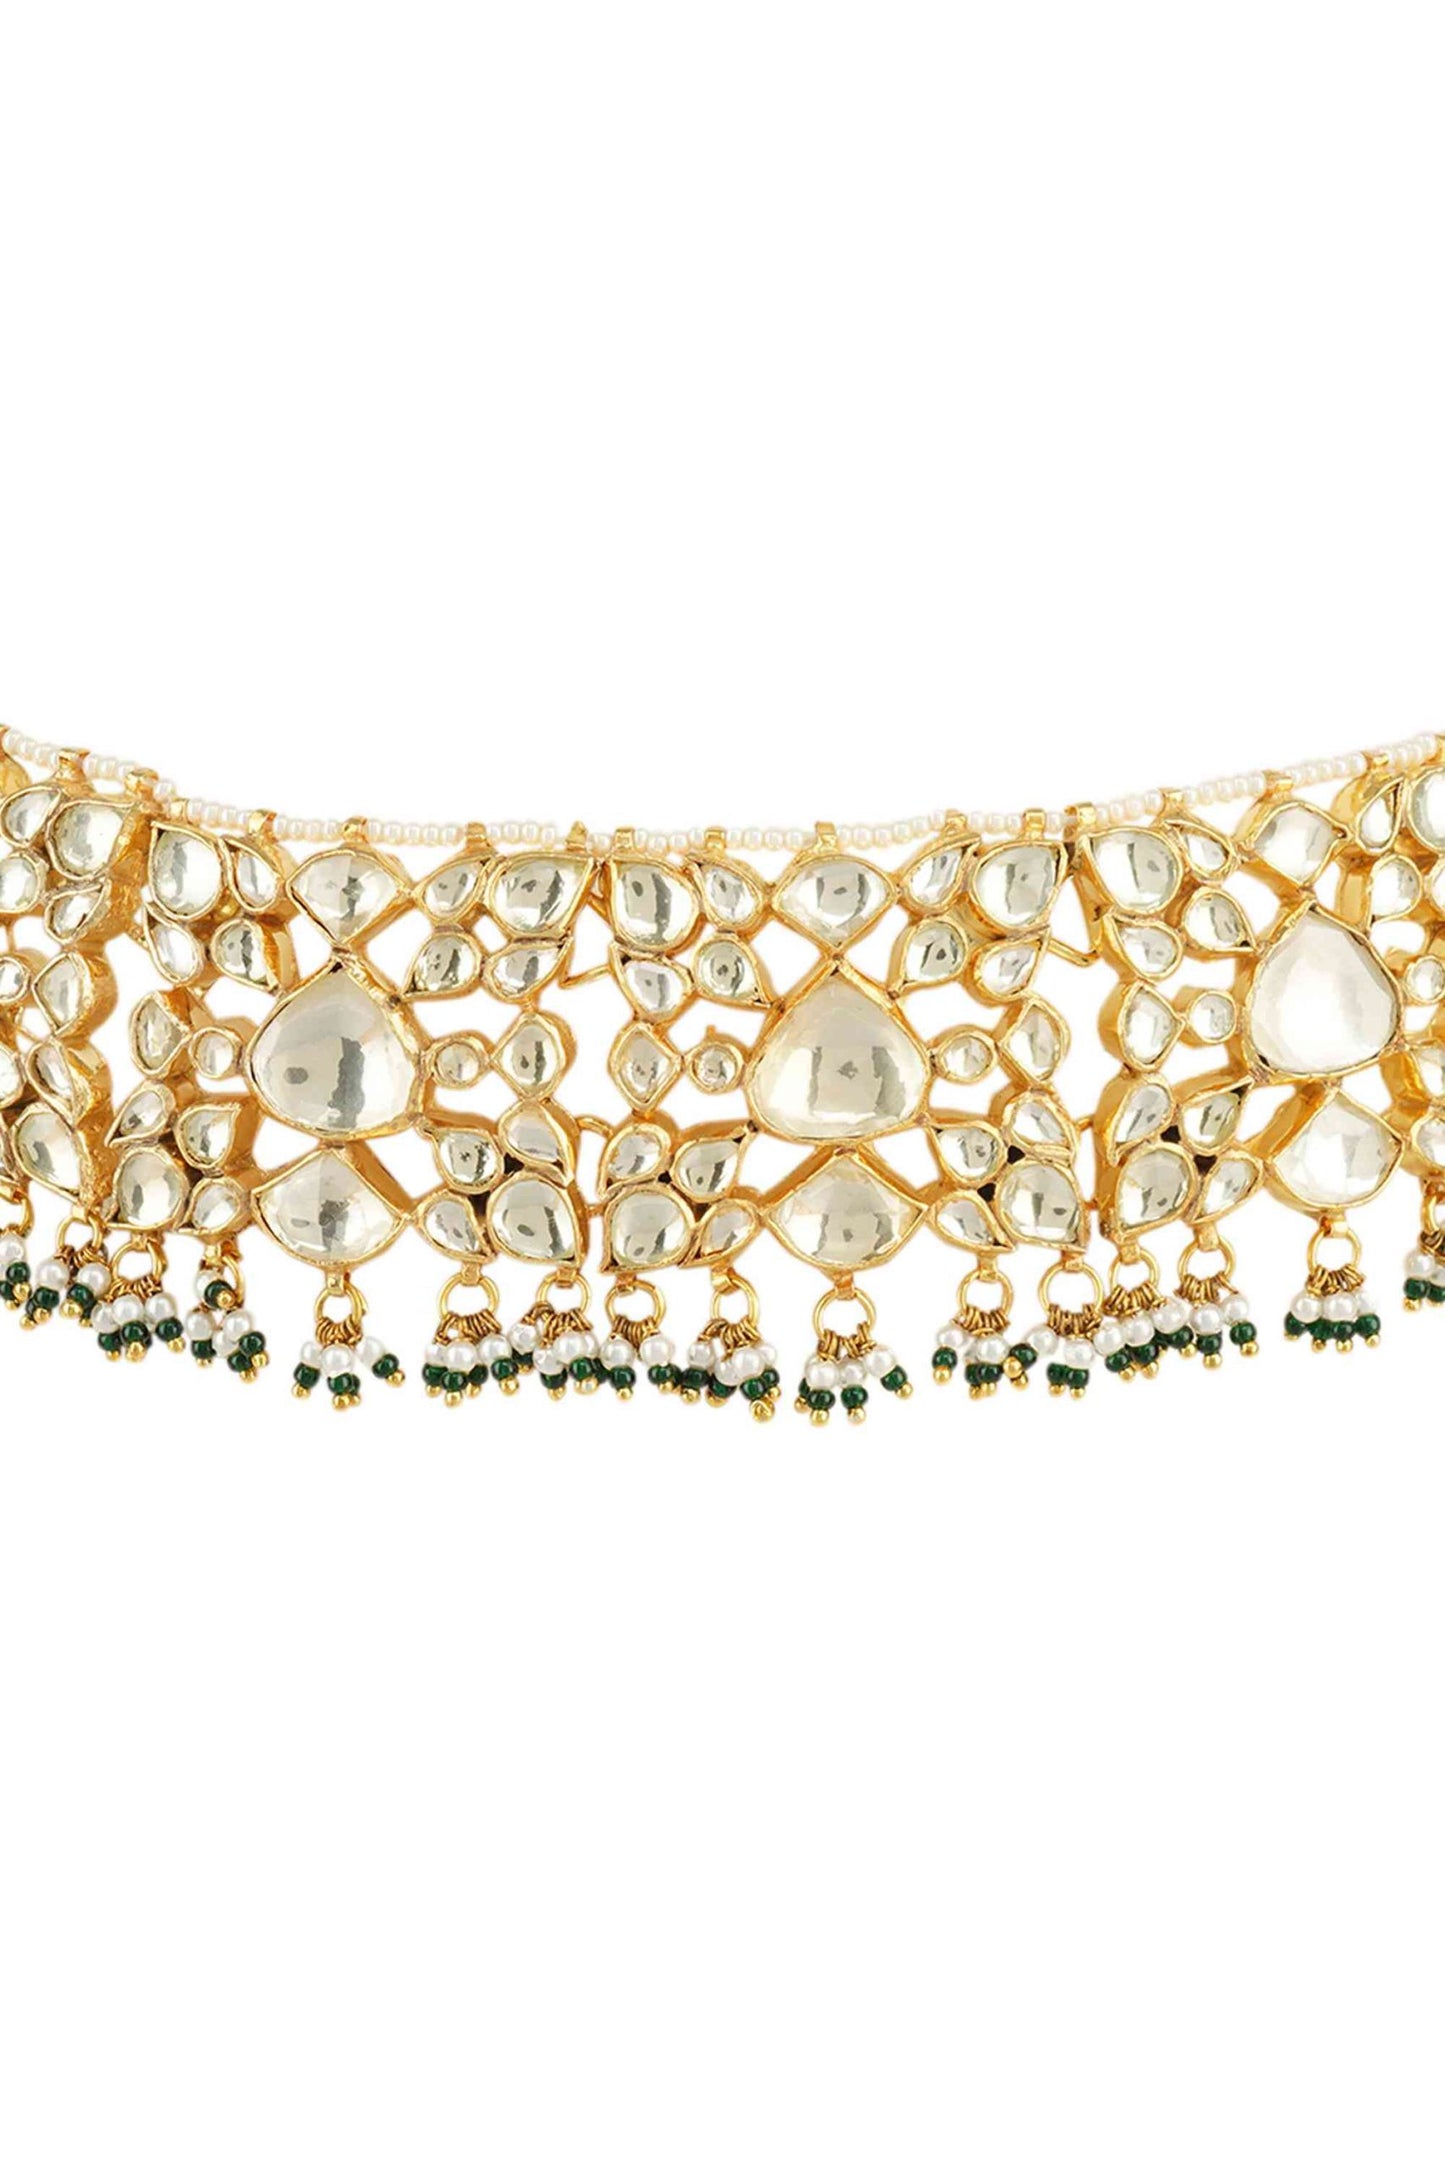 Shining Gold Plated Kundan Choker Necklace Set